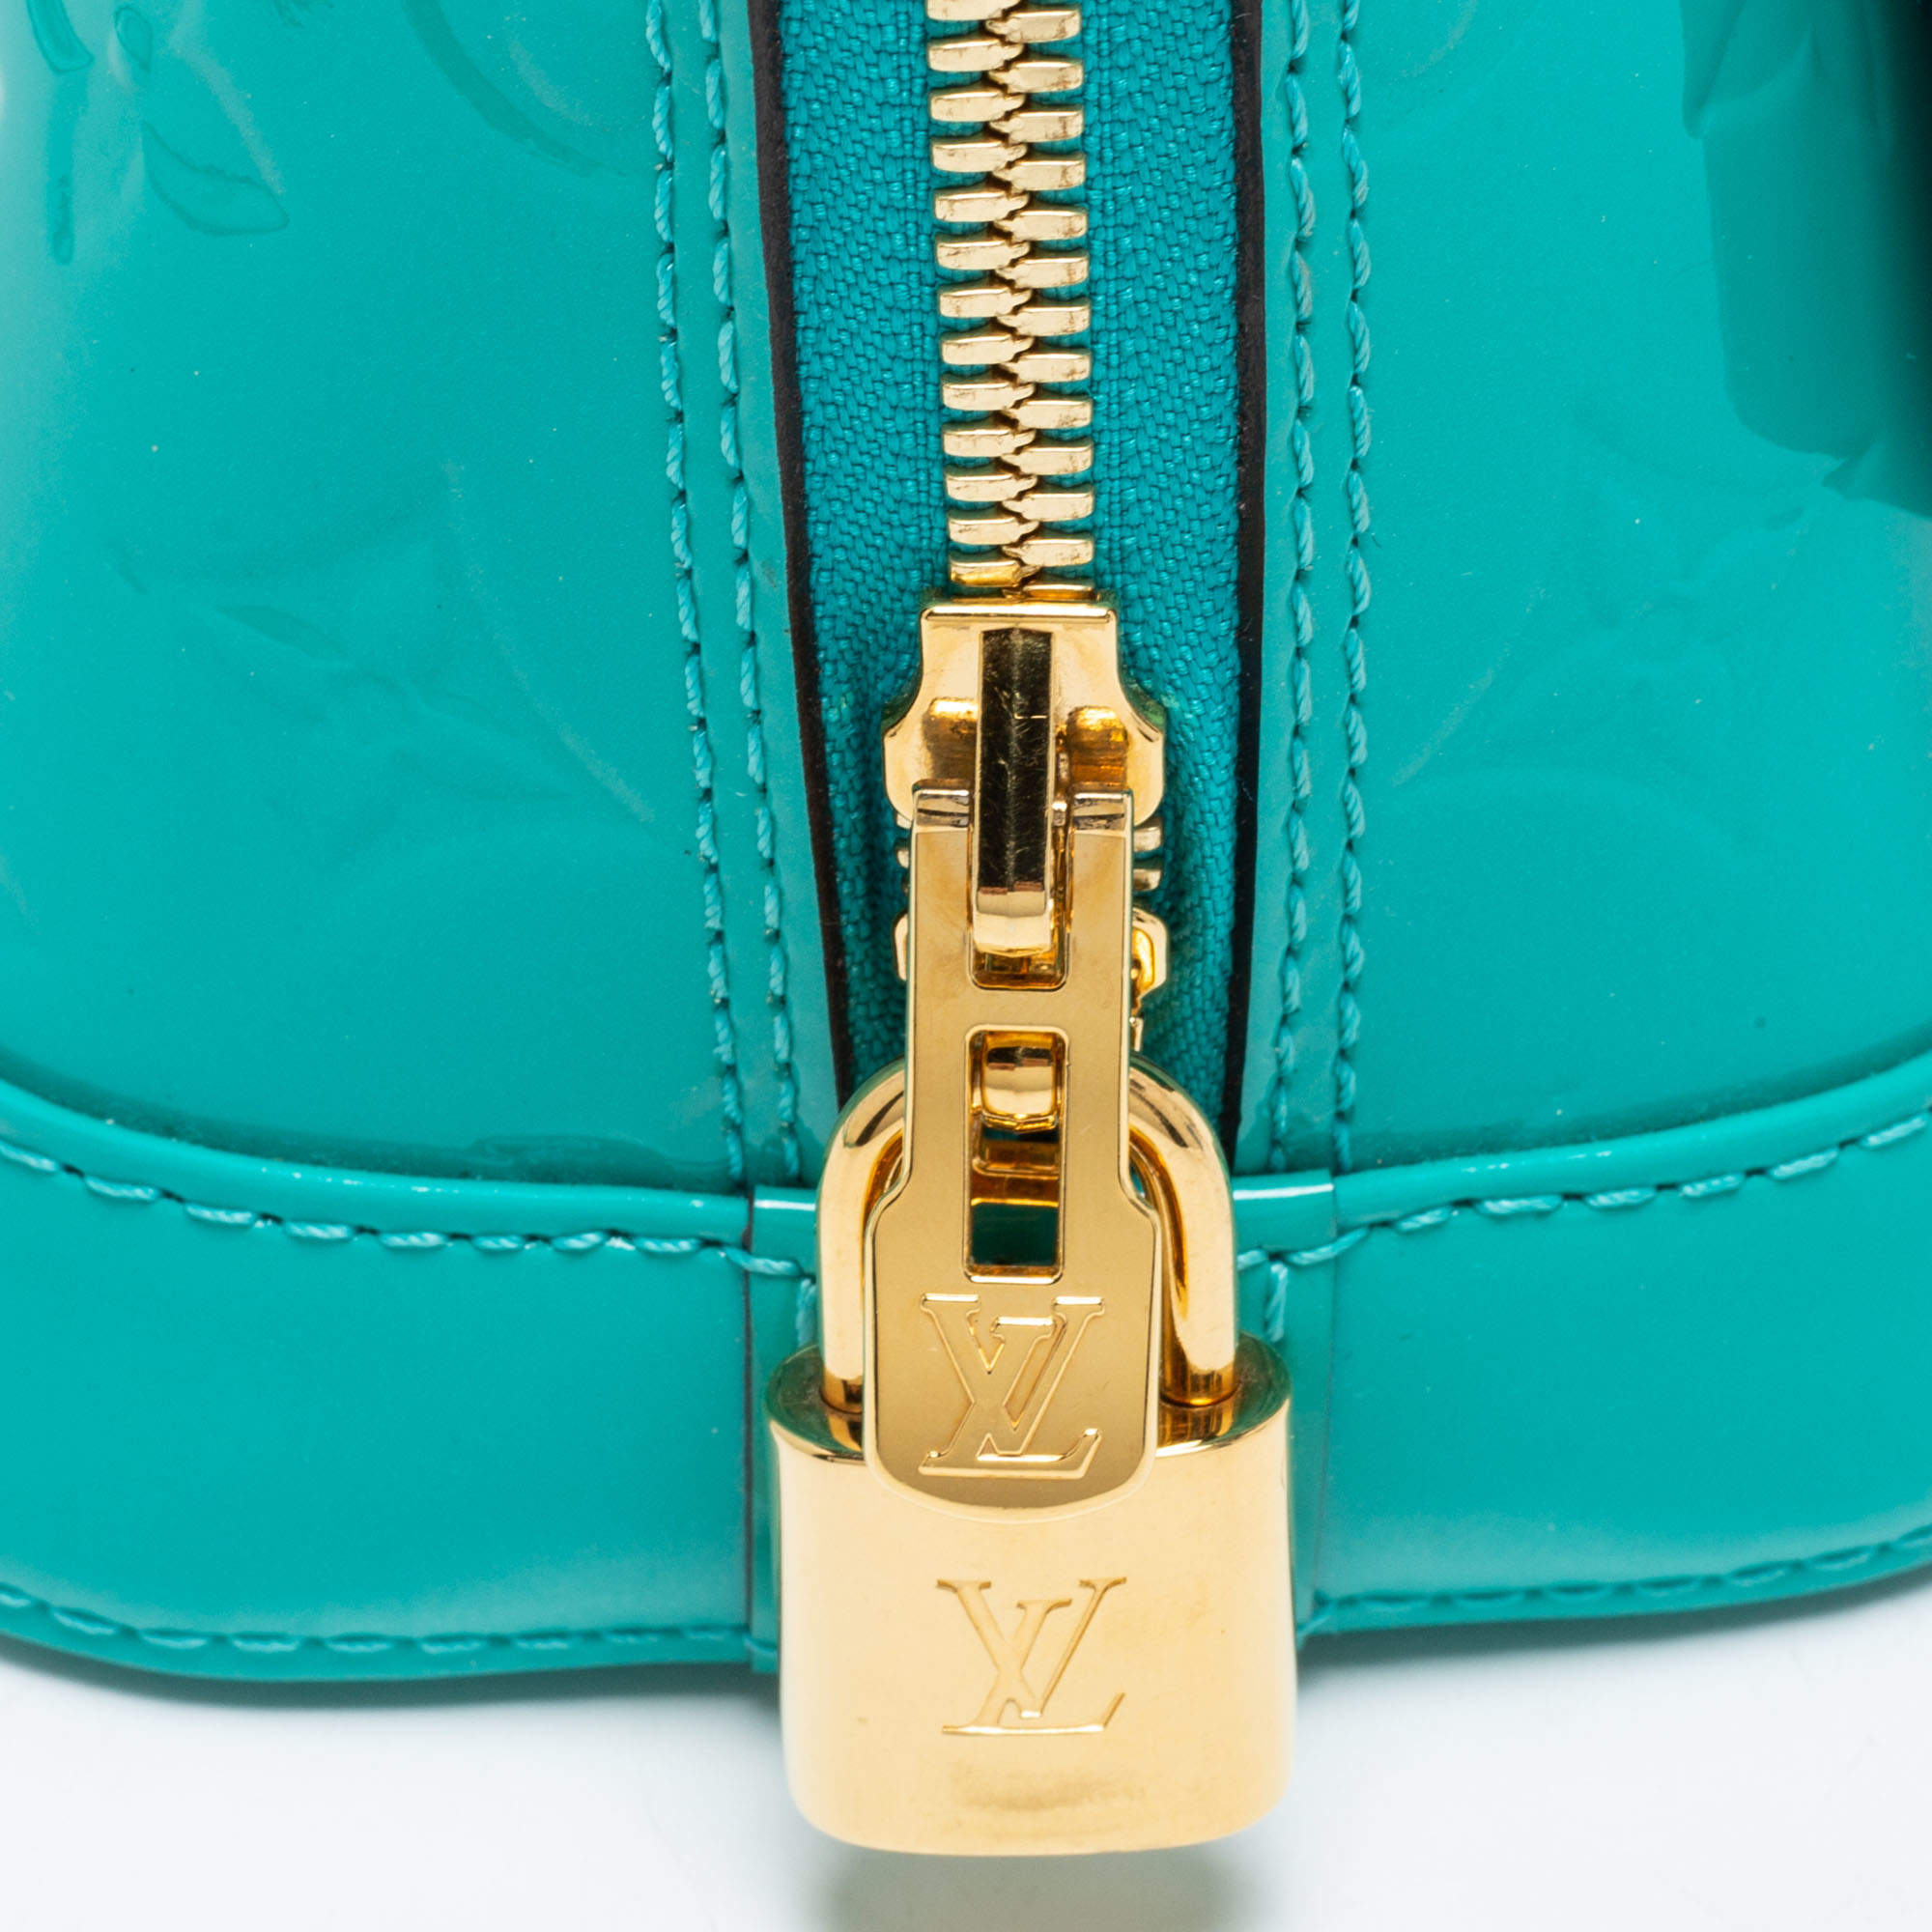 Louis Vuitton, Bags, Rarelouis Vuitton Alma Bbbleu Lagon Vernis Handbag  Purse Blue Lagoon Teal